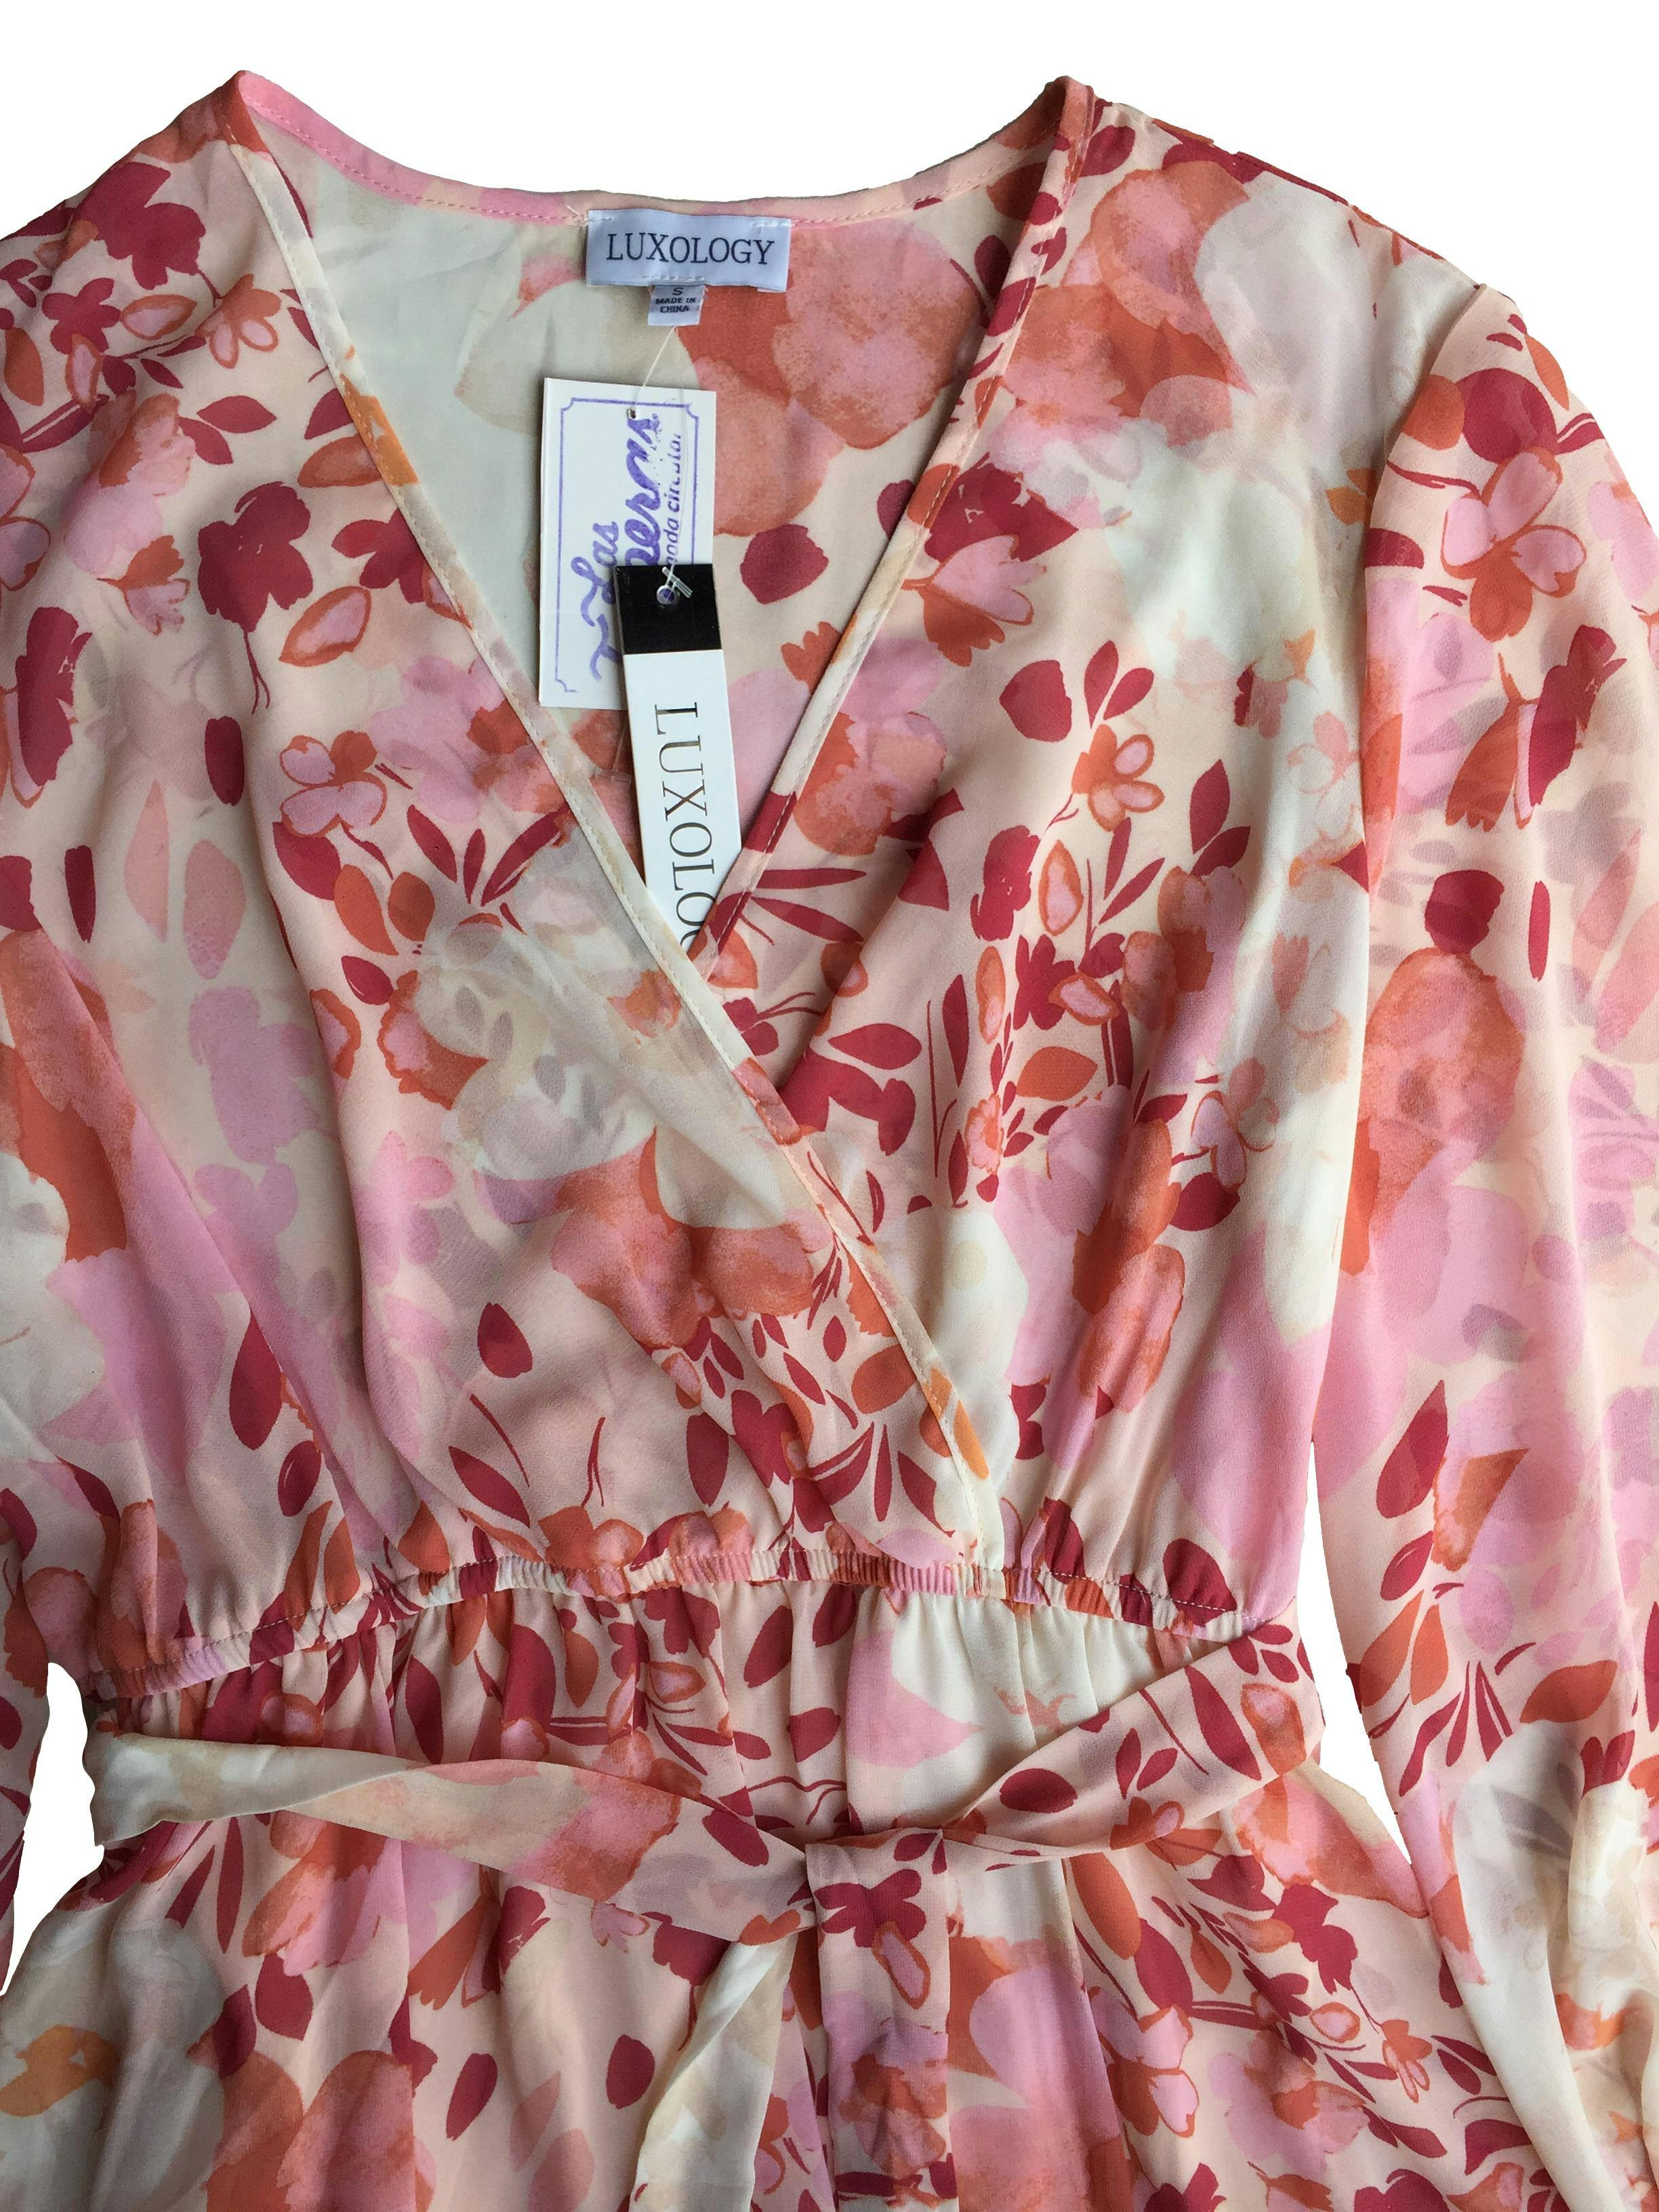 Vestido Luxology de gasa rosa con flores, mangas anchas, elástico en puños y cintura con lazo, forro. Busto: 94cm, Largo: 139cm. Nuevo con etiqueta. 